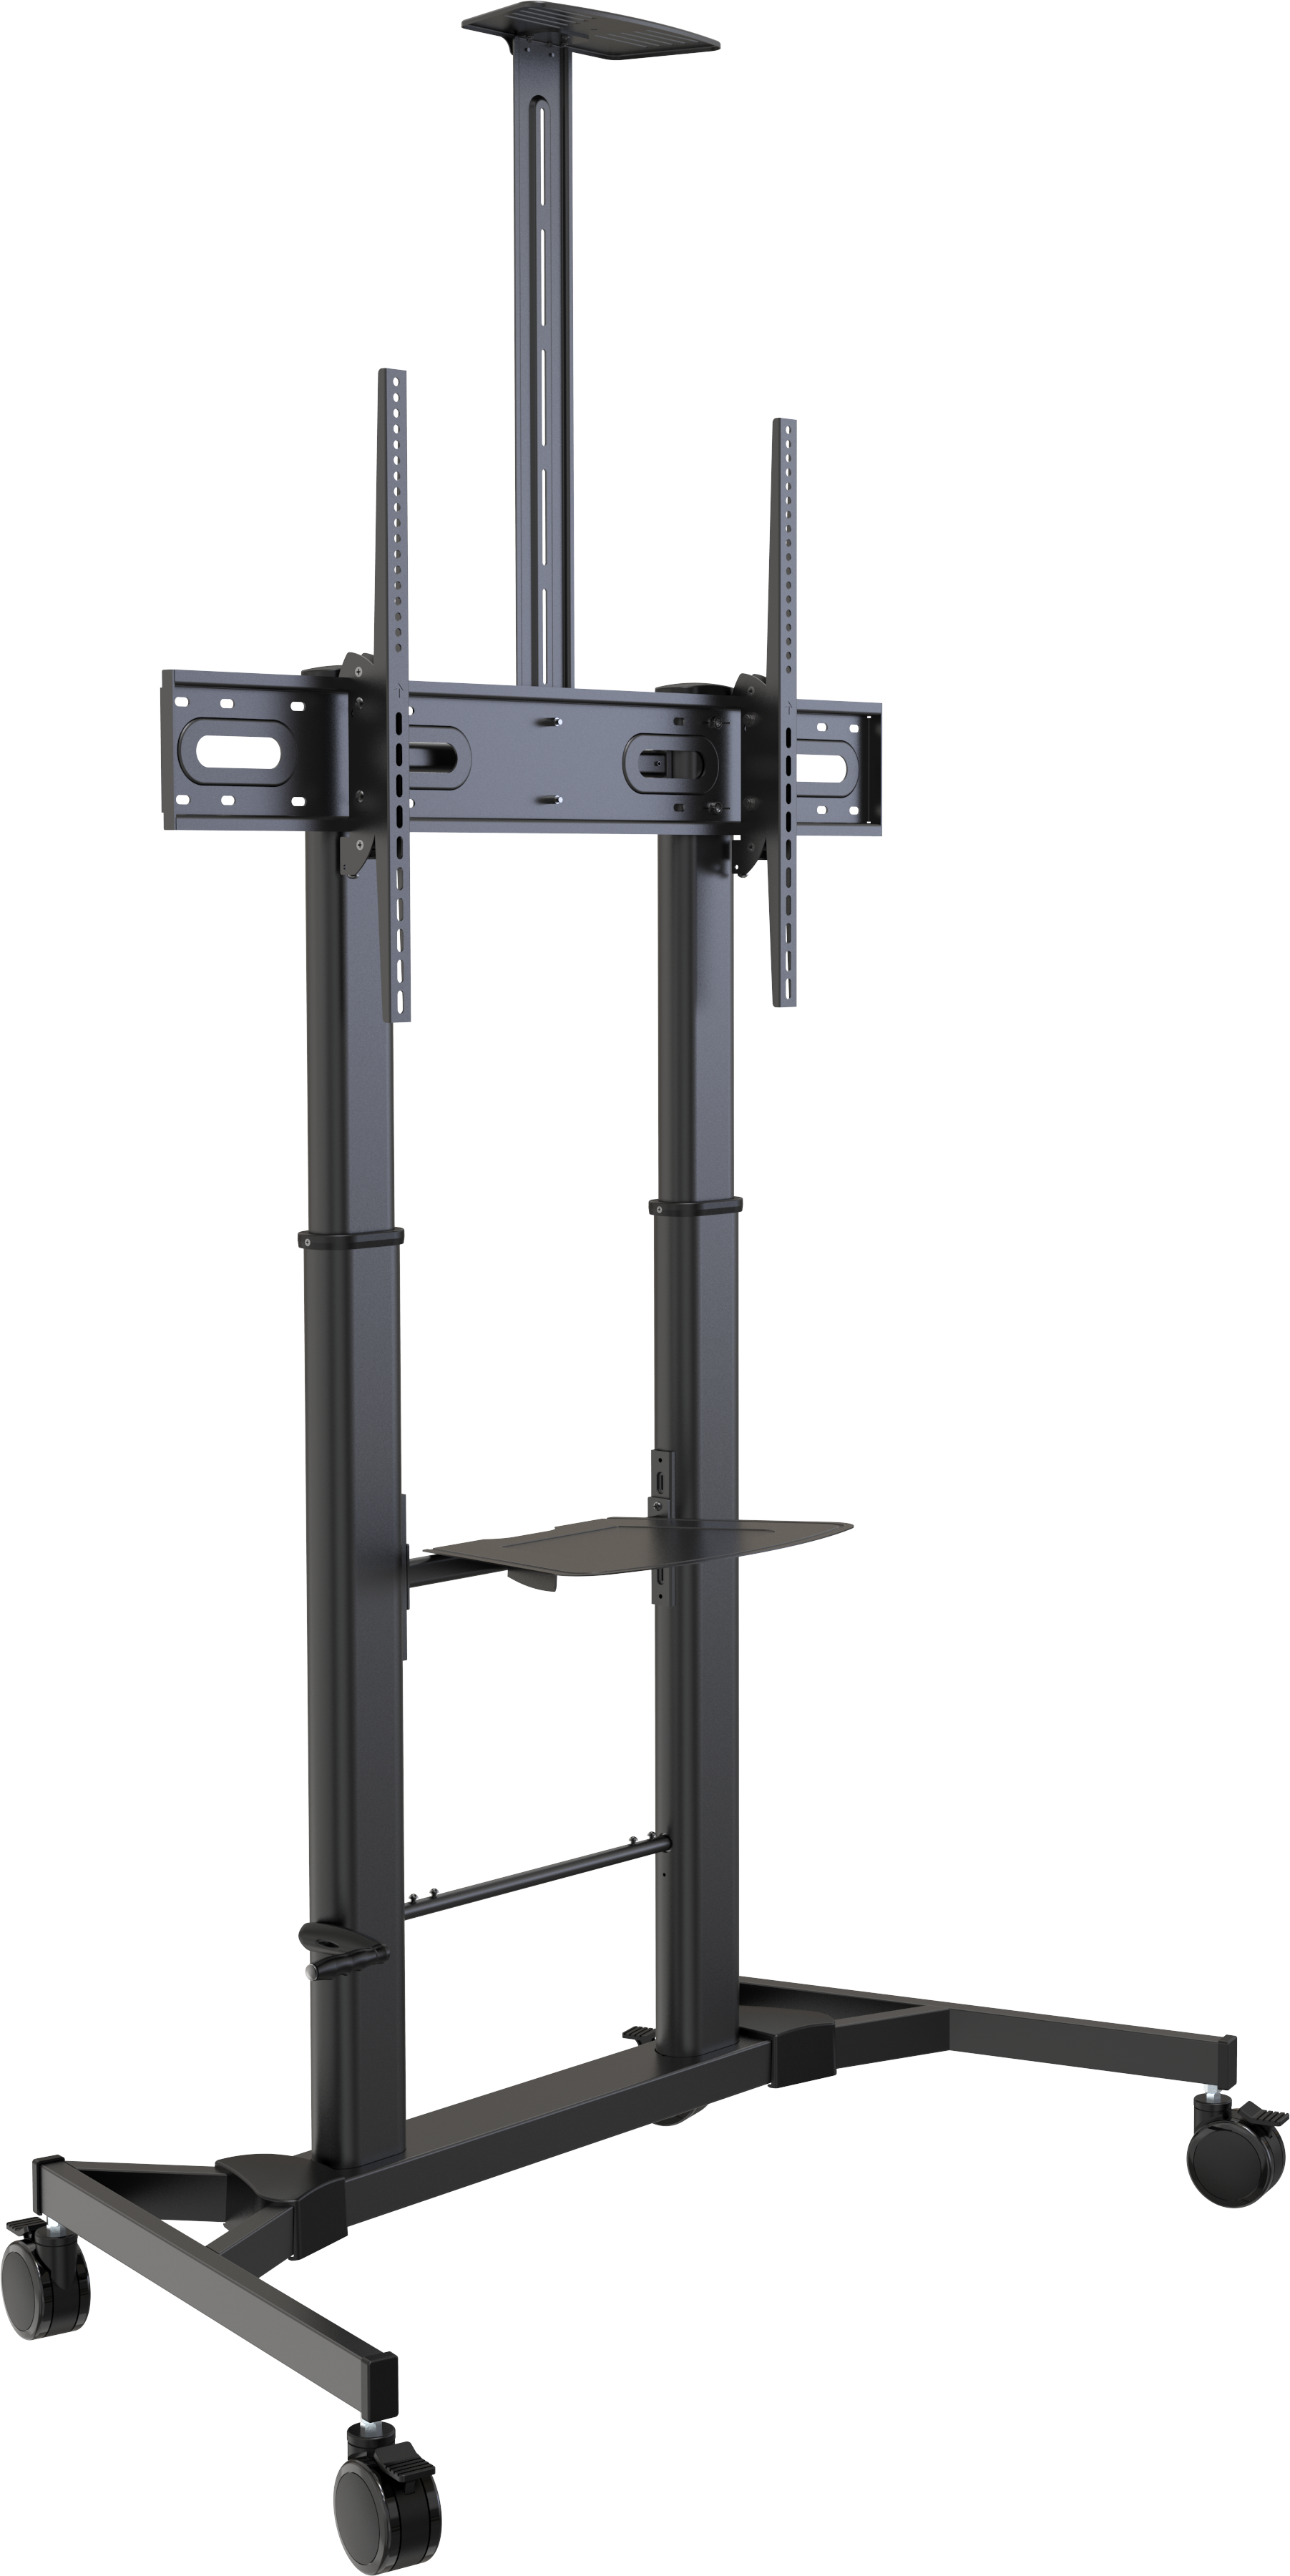 An image showing Carrello per schermi regolabile in altezza con portata di 80 kg